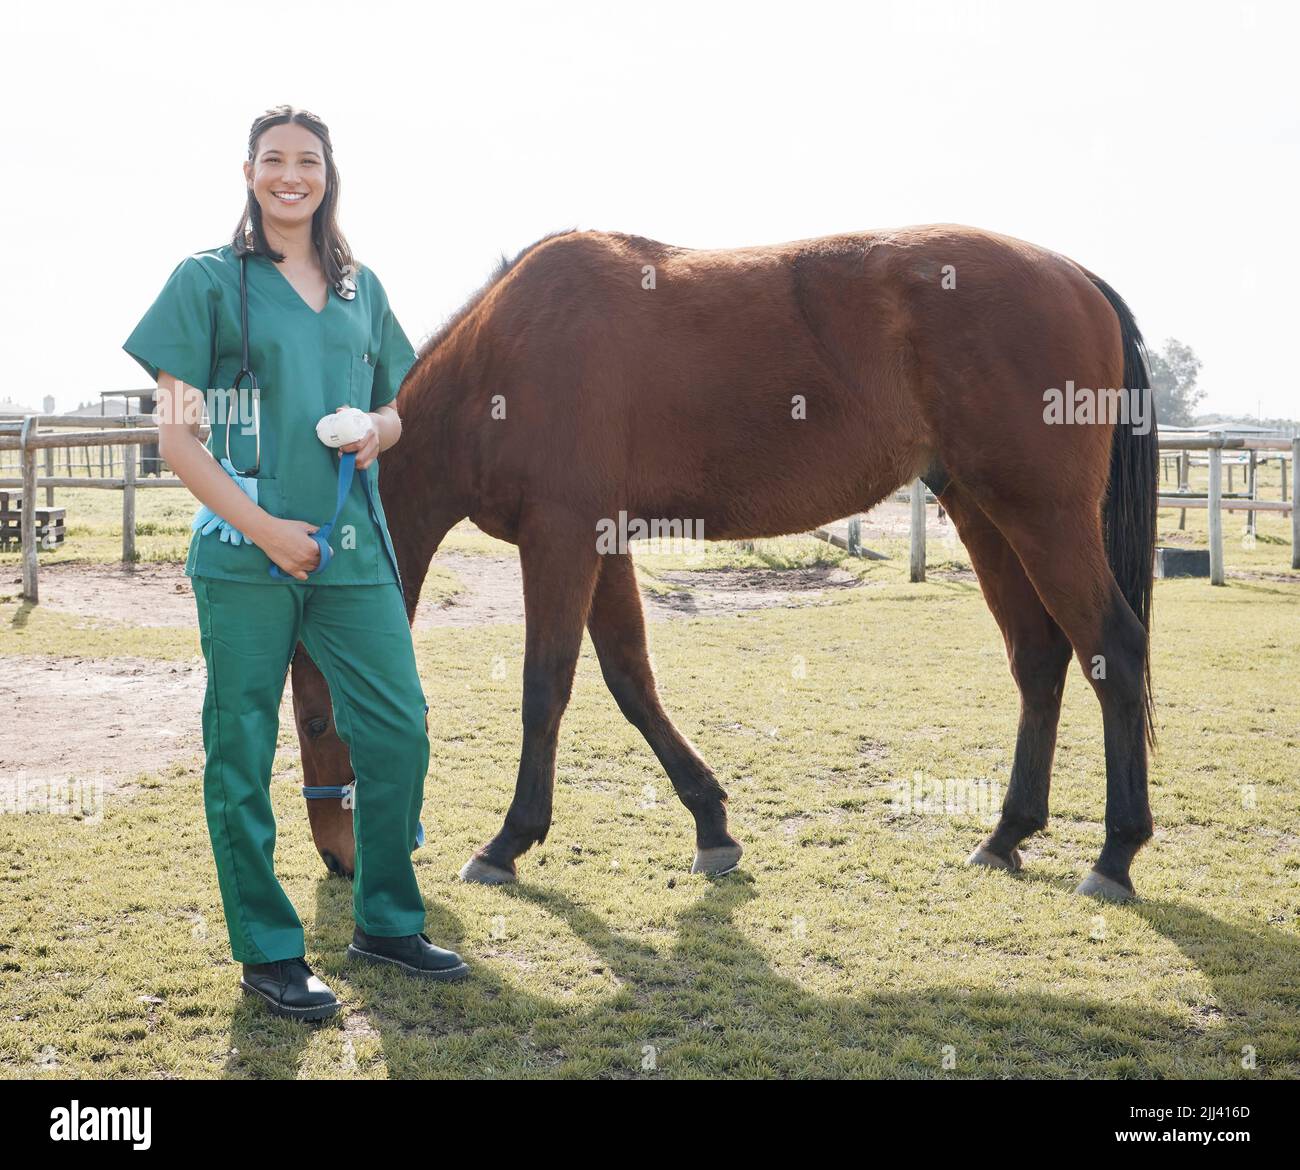 Meine Arbeit hier ist erledigt. Ganzkörperaufnahme eines attraktiven jungen Tierarztes, der allein steht, nachdem er ein Pferd auf einem Bauernhof untersucht hat. Stockfoto